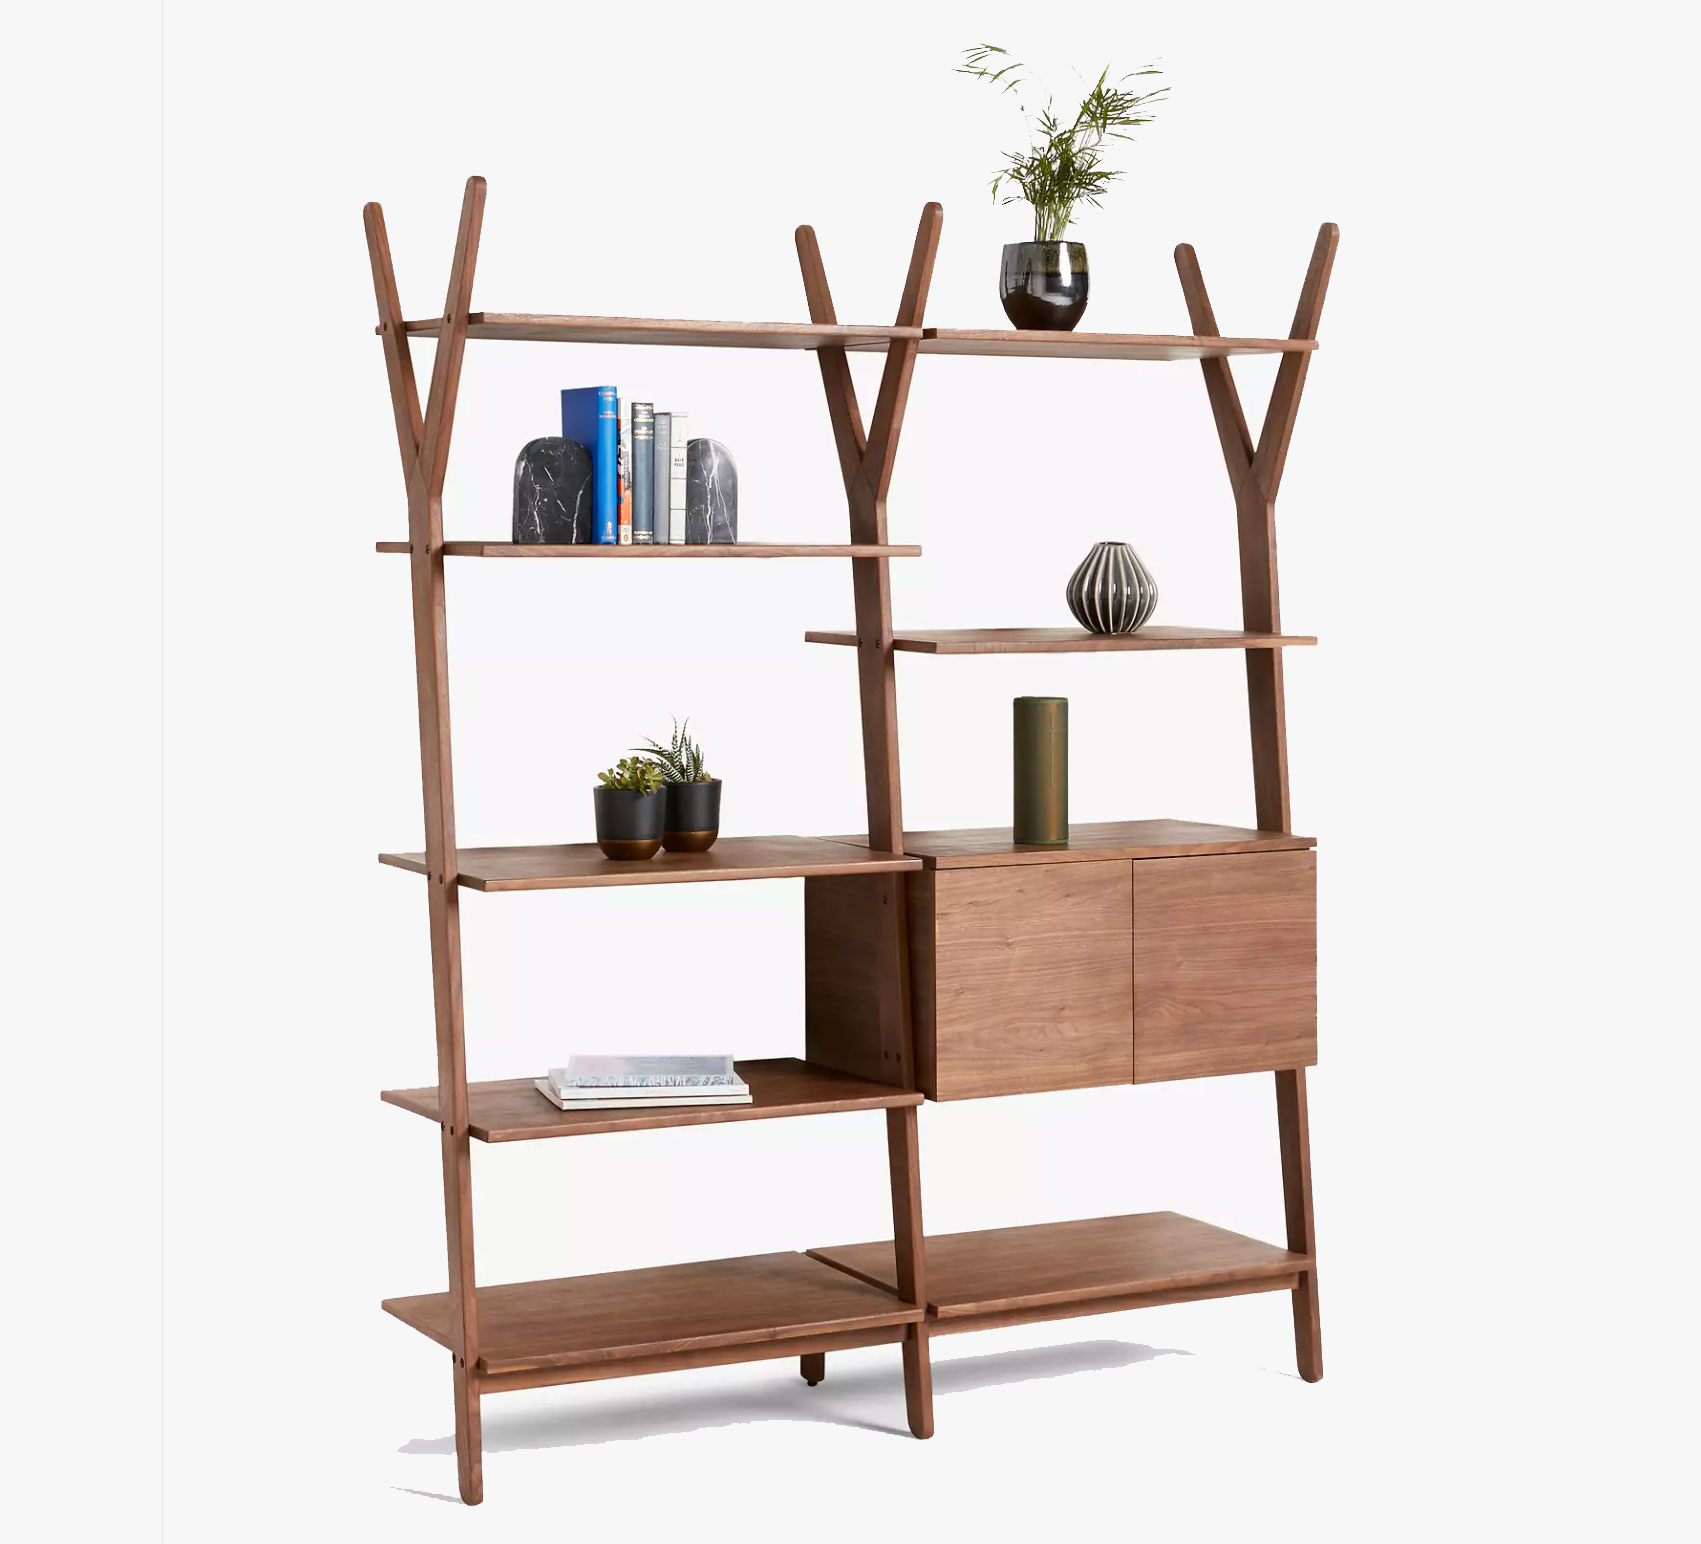 Home office essentials: shelves